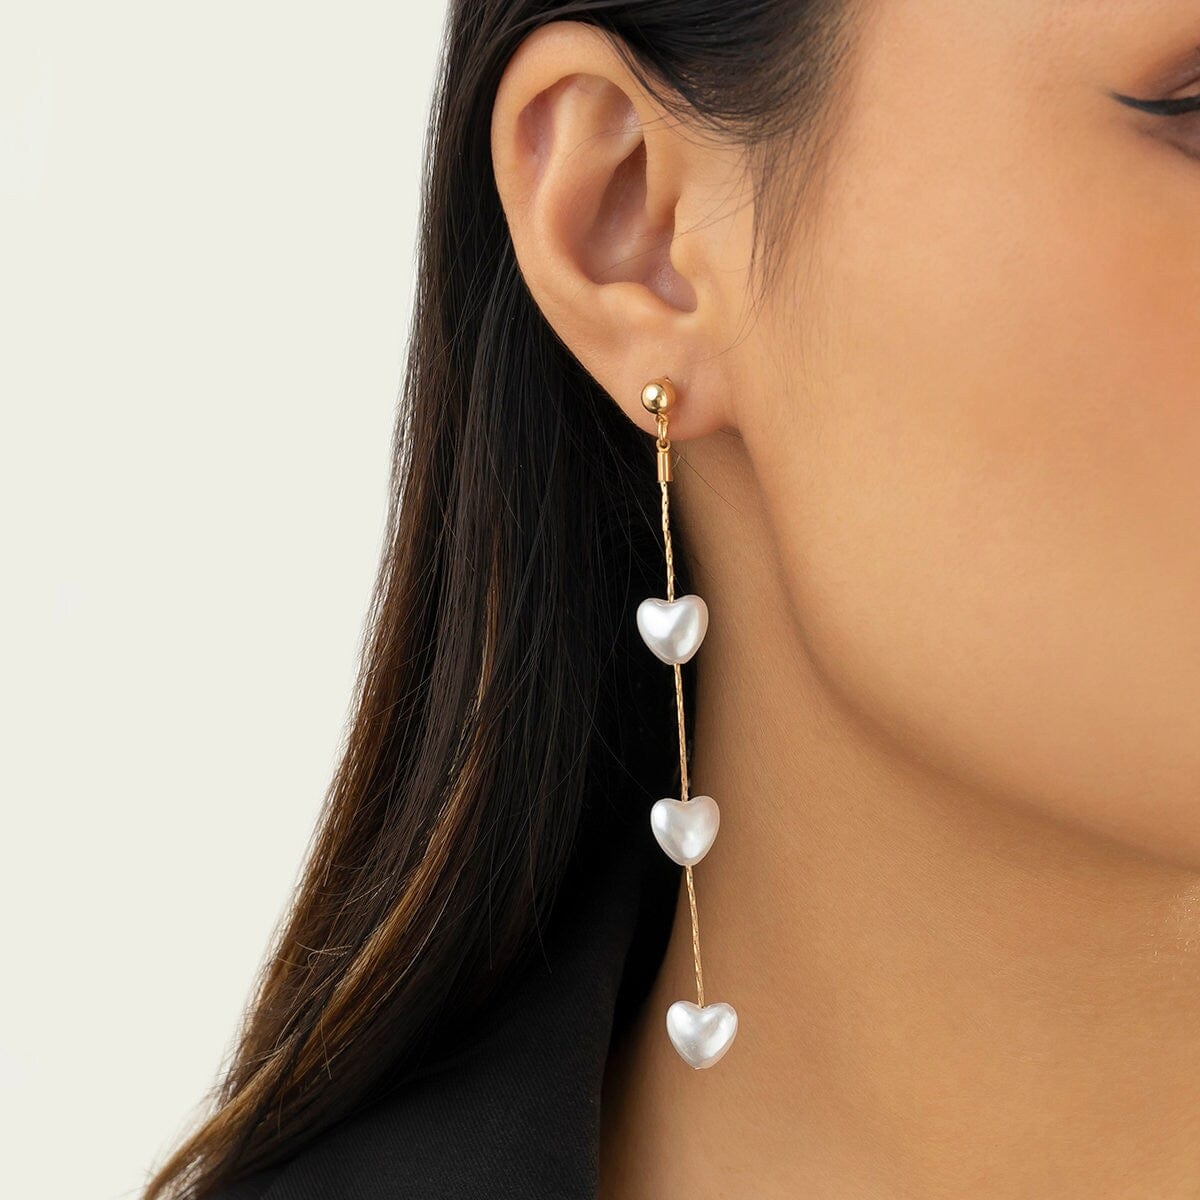 Chic Dangling Heart Pearl Chain Earrings - ArtGalleryZen